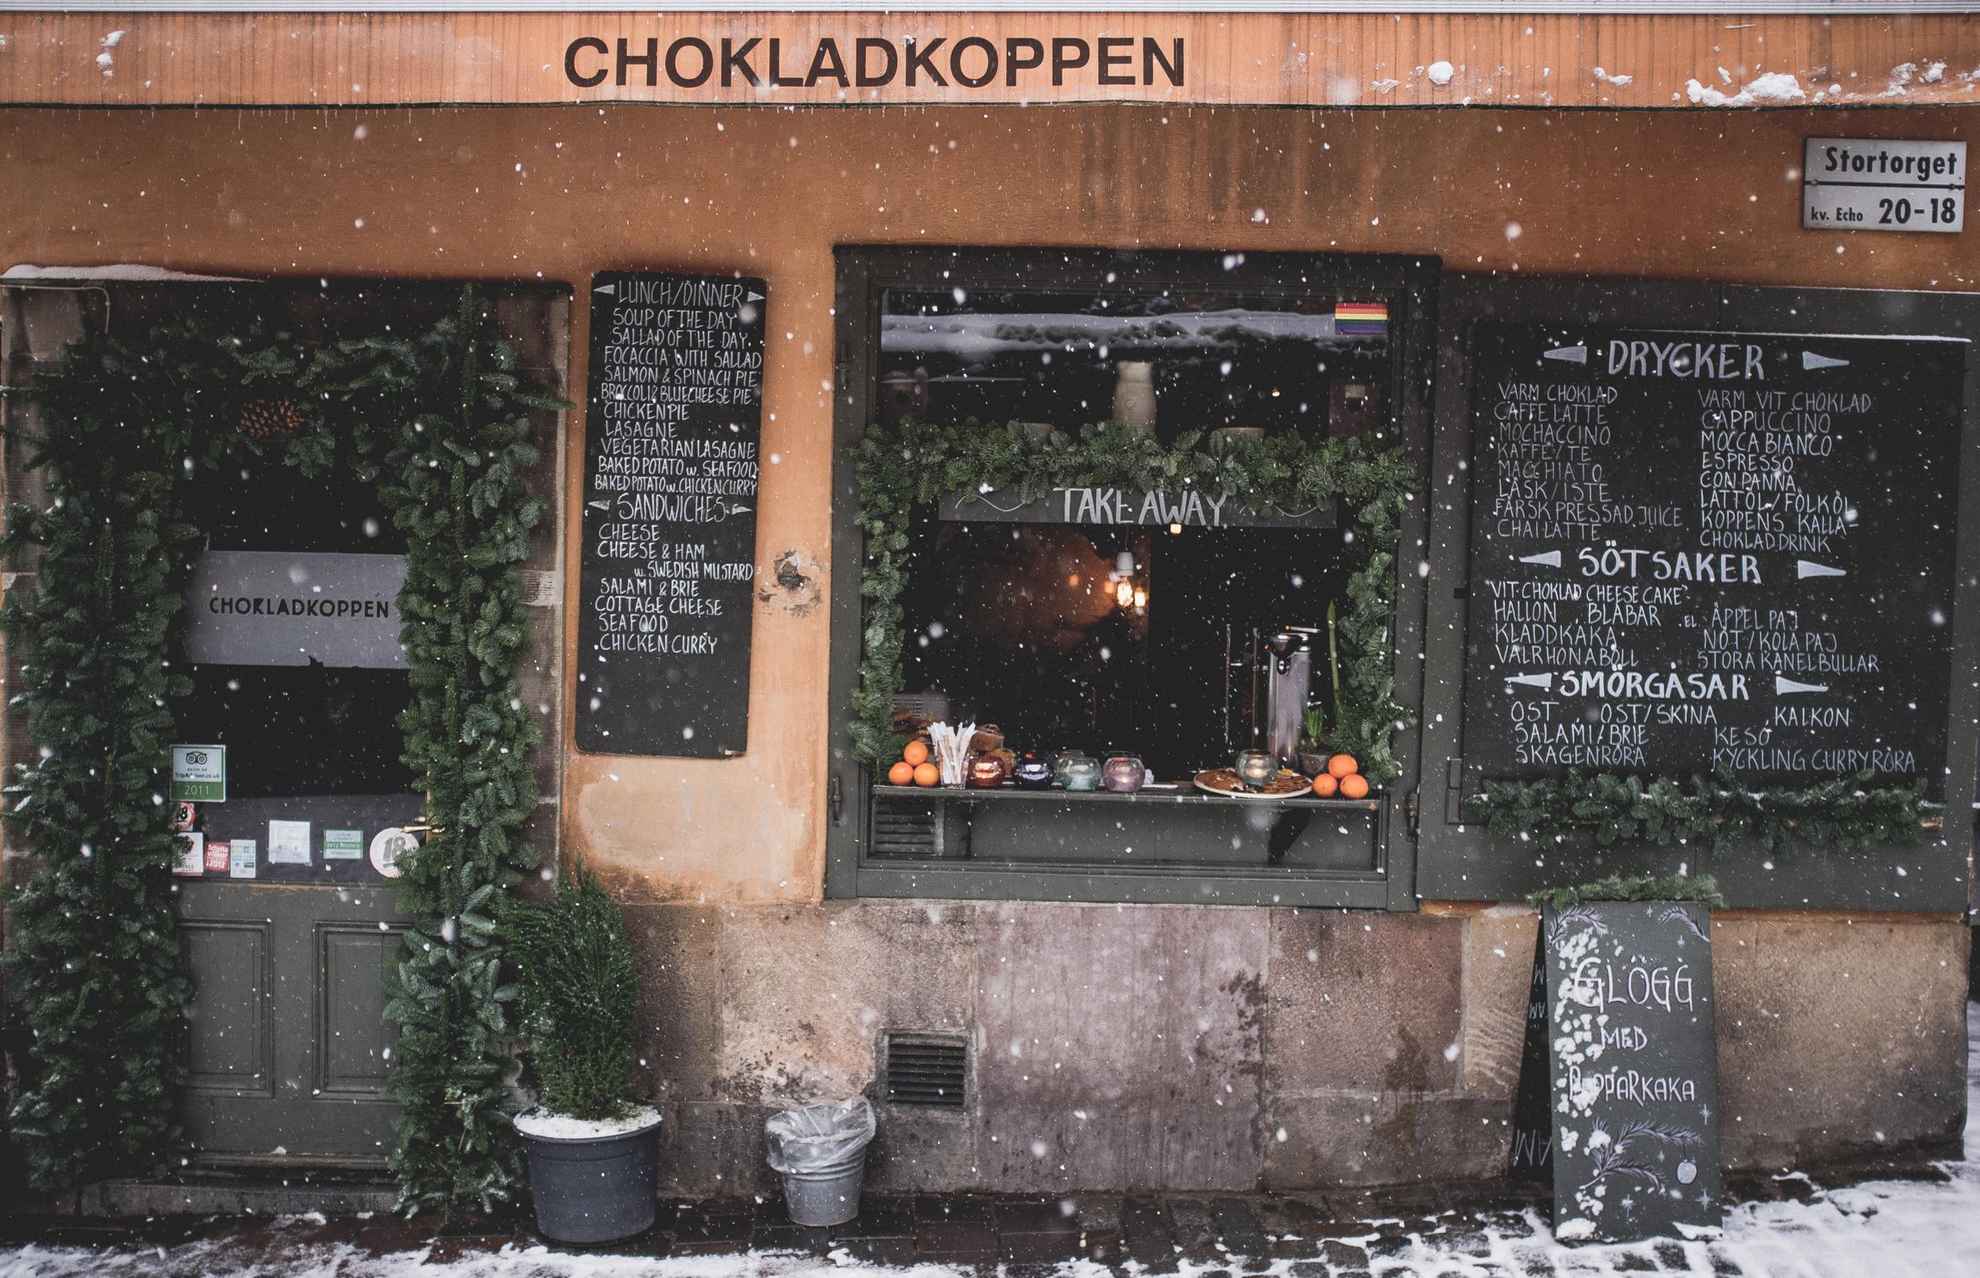 Aussenansicht des Café Chokladkoppen in Stockholm an einem Wintertag. Es schneit draußen und das Fenster des Cafes ist mit Tannenzweigen verziert.